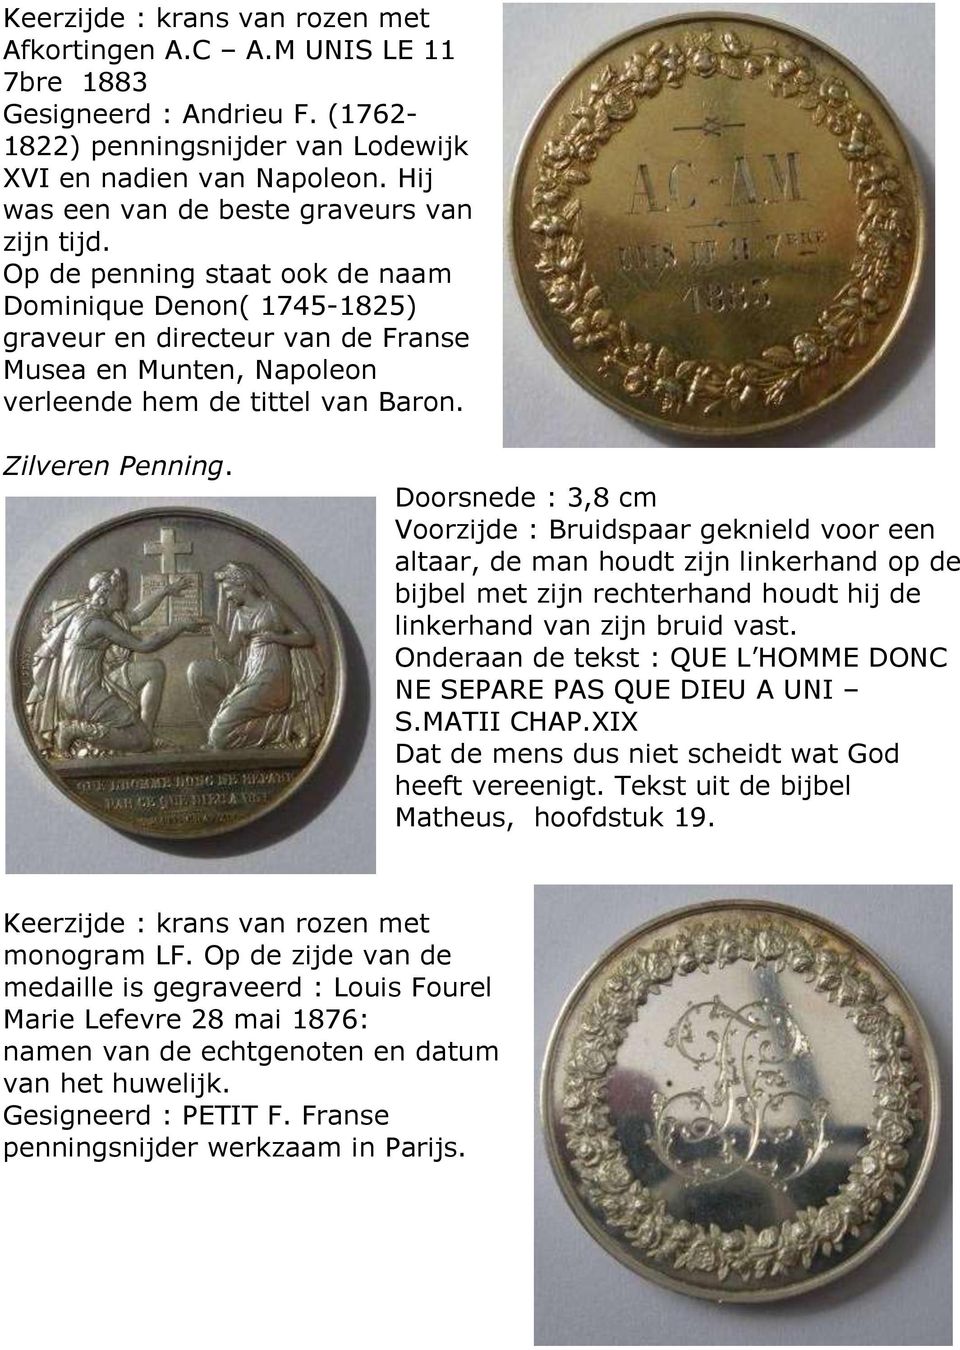 Op de penning staat ook de naam Dominique Denon( 1745-1825) graveur en directeur van de Franse Musea en Munten, Napoleon verleende hem de tittel van Baron. Zilveren Penning.